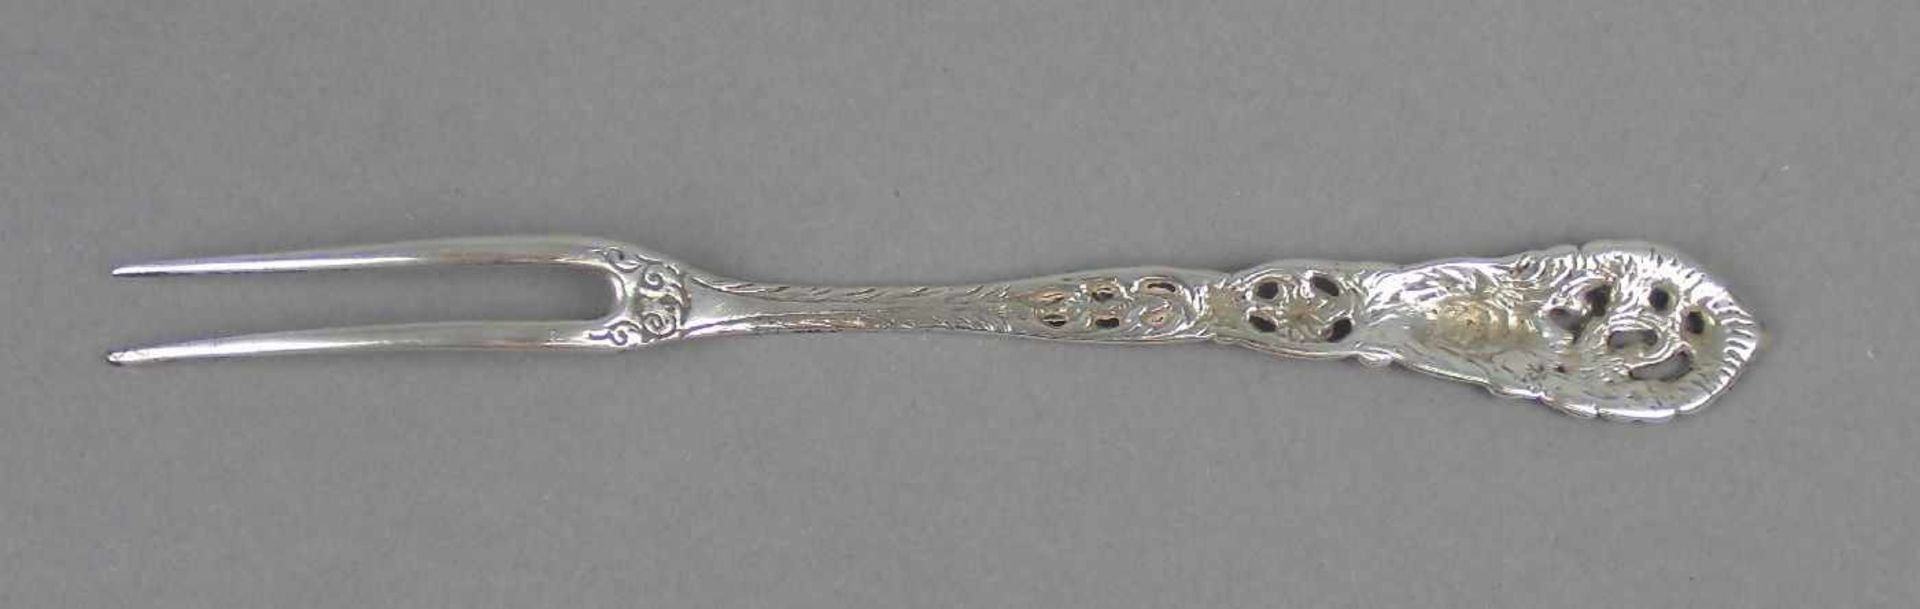 VORLEGEGABEL / serving fork, wohl deutsch, 1. H. 20. Jh., 830er Silber (15,8 g). Geschweifte Form, - Image 3 of 3